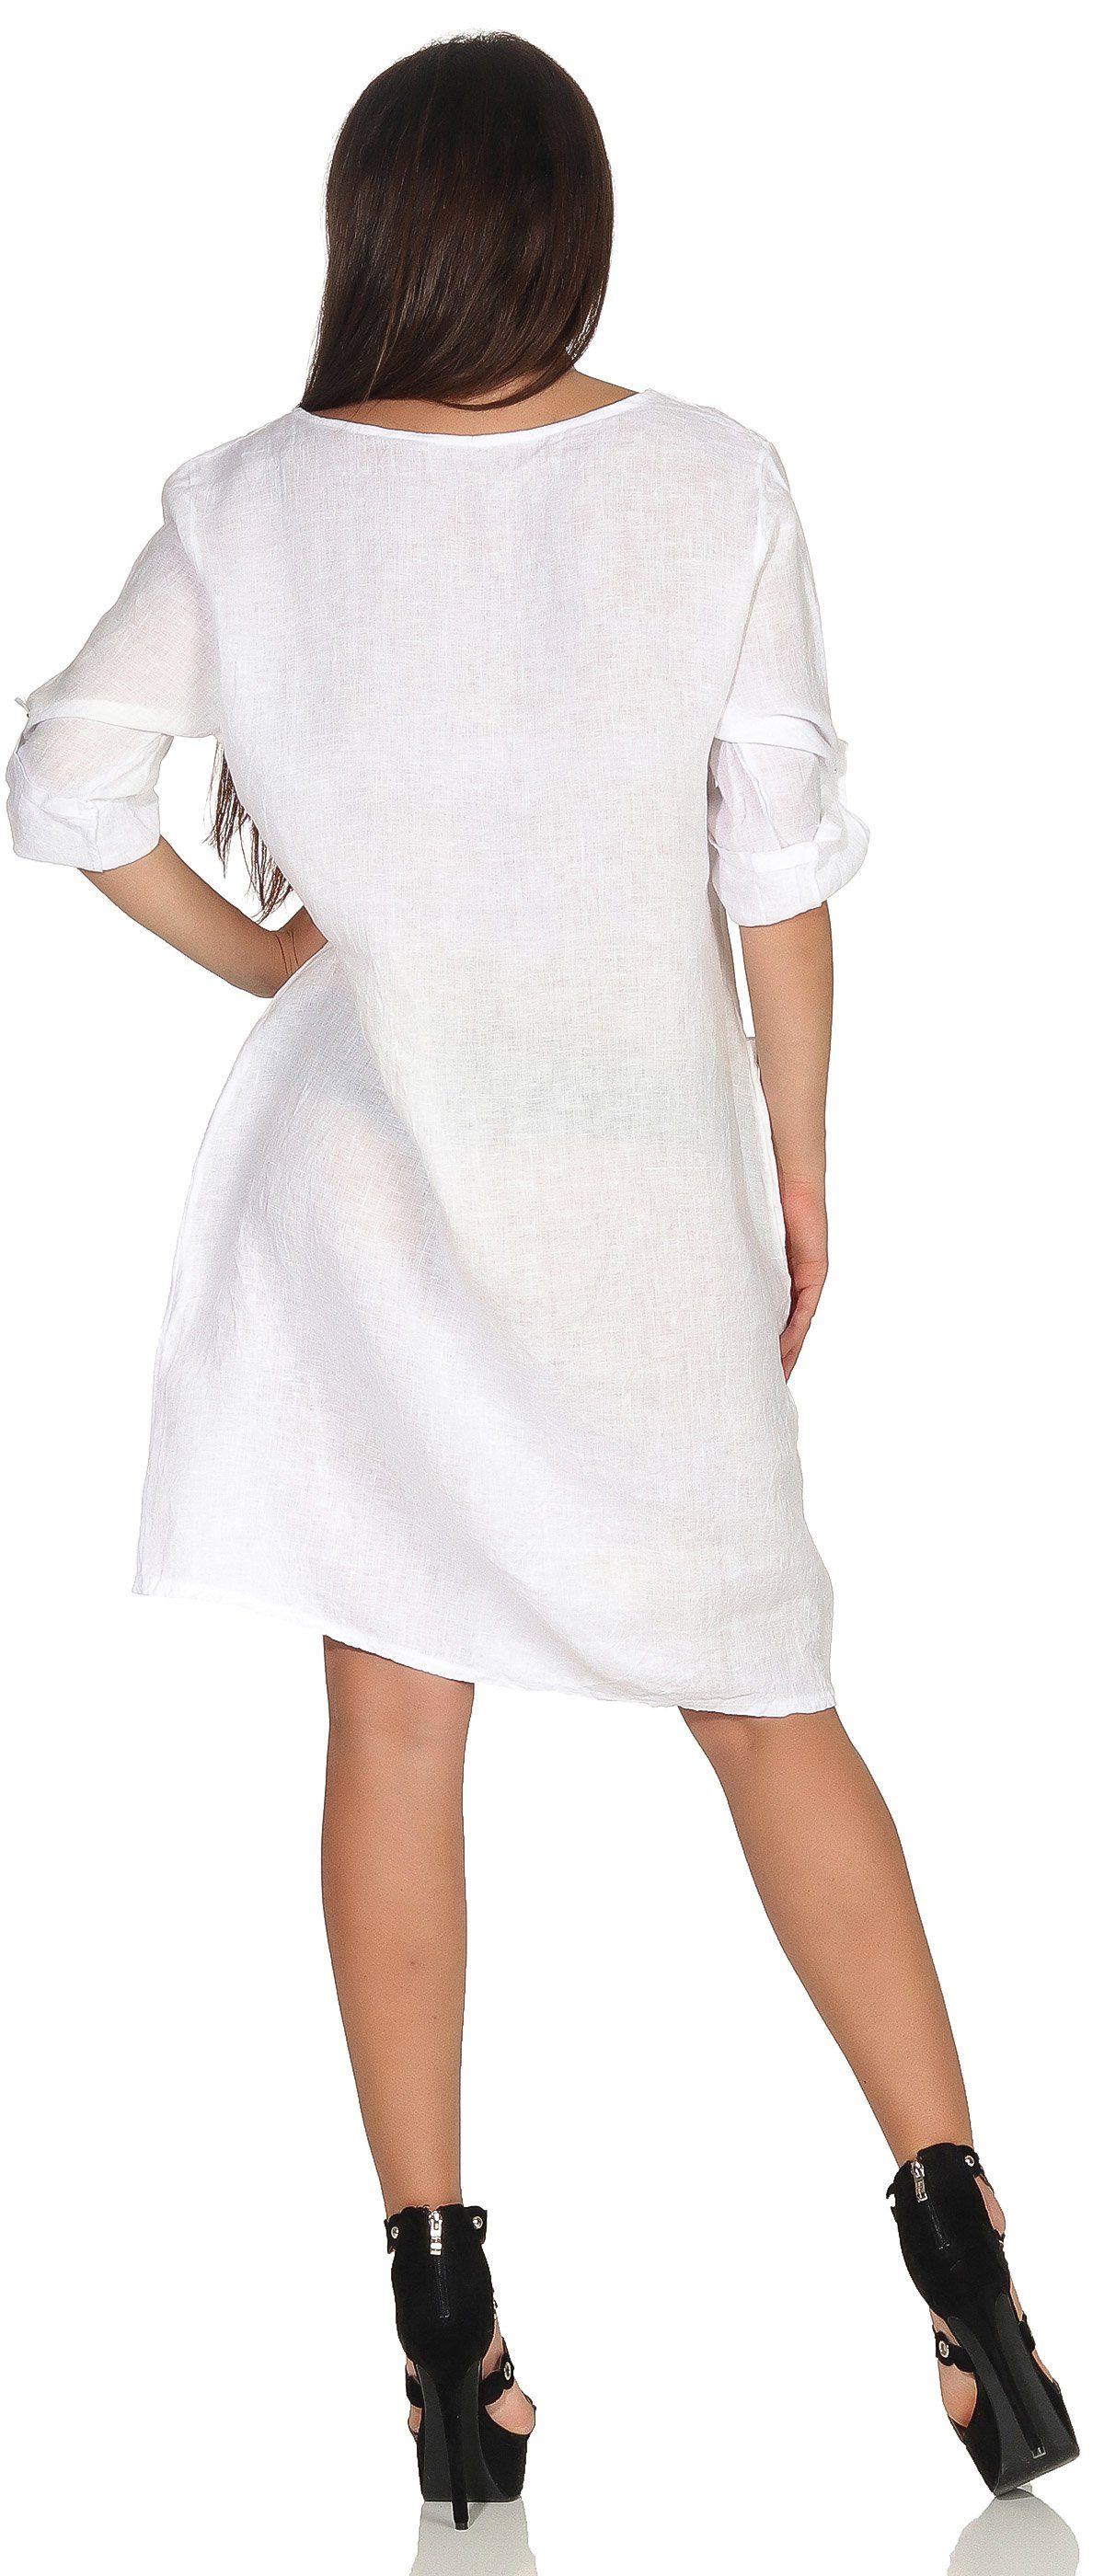 Mississhop Sommerkleid Leinenkleid Damenkleid 100% Leinen Weiß M.306